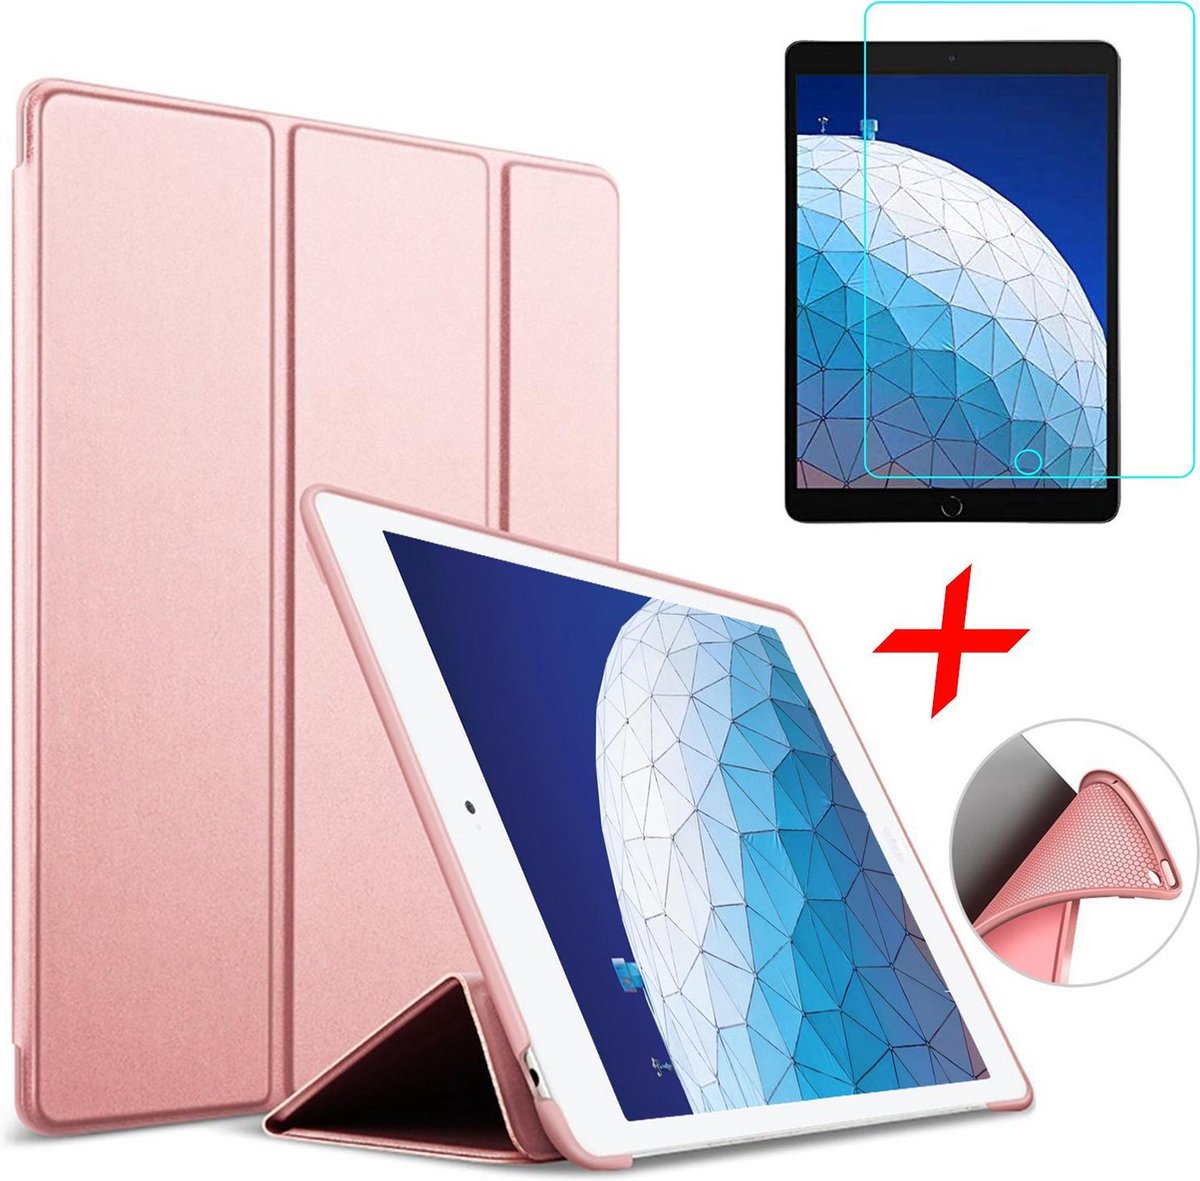 Hoes + Screenprotector geschikt voor iPad Air 2019 10.5 inch - Smart Book Case Roségoud